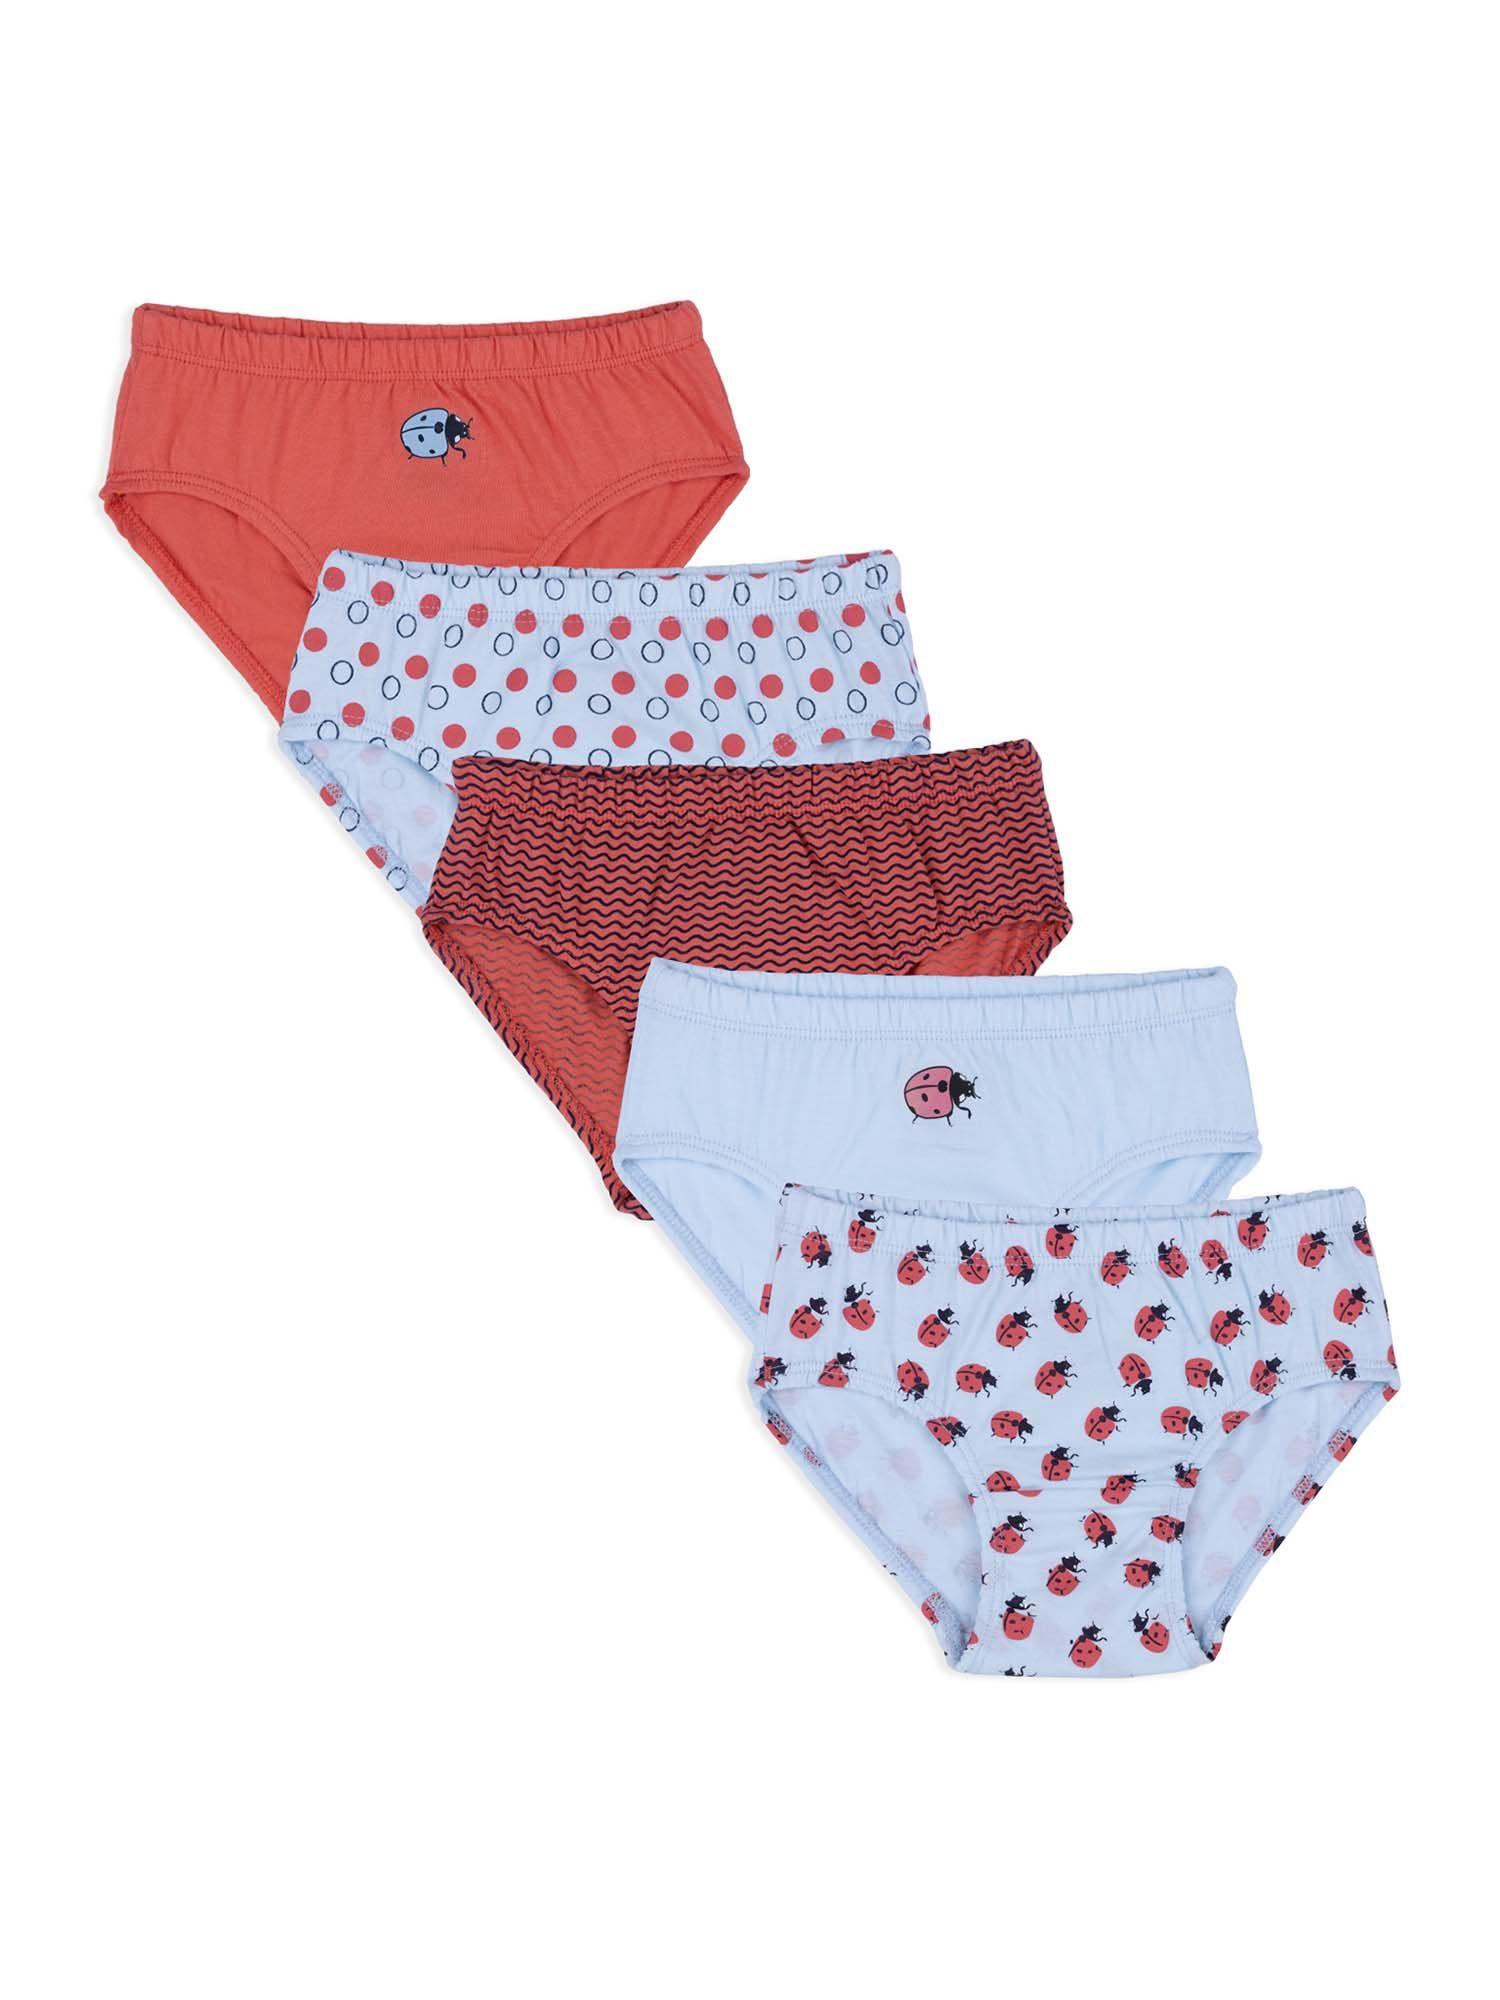 girls cotton printed panties underwear innerwear multicolor (pack of 5)